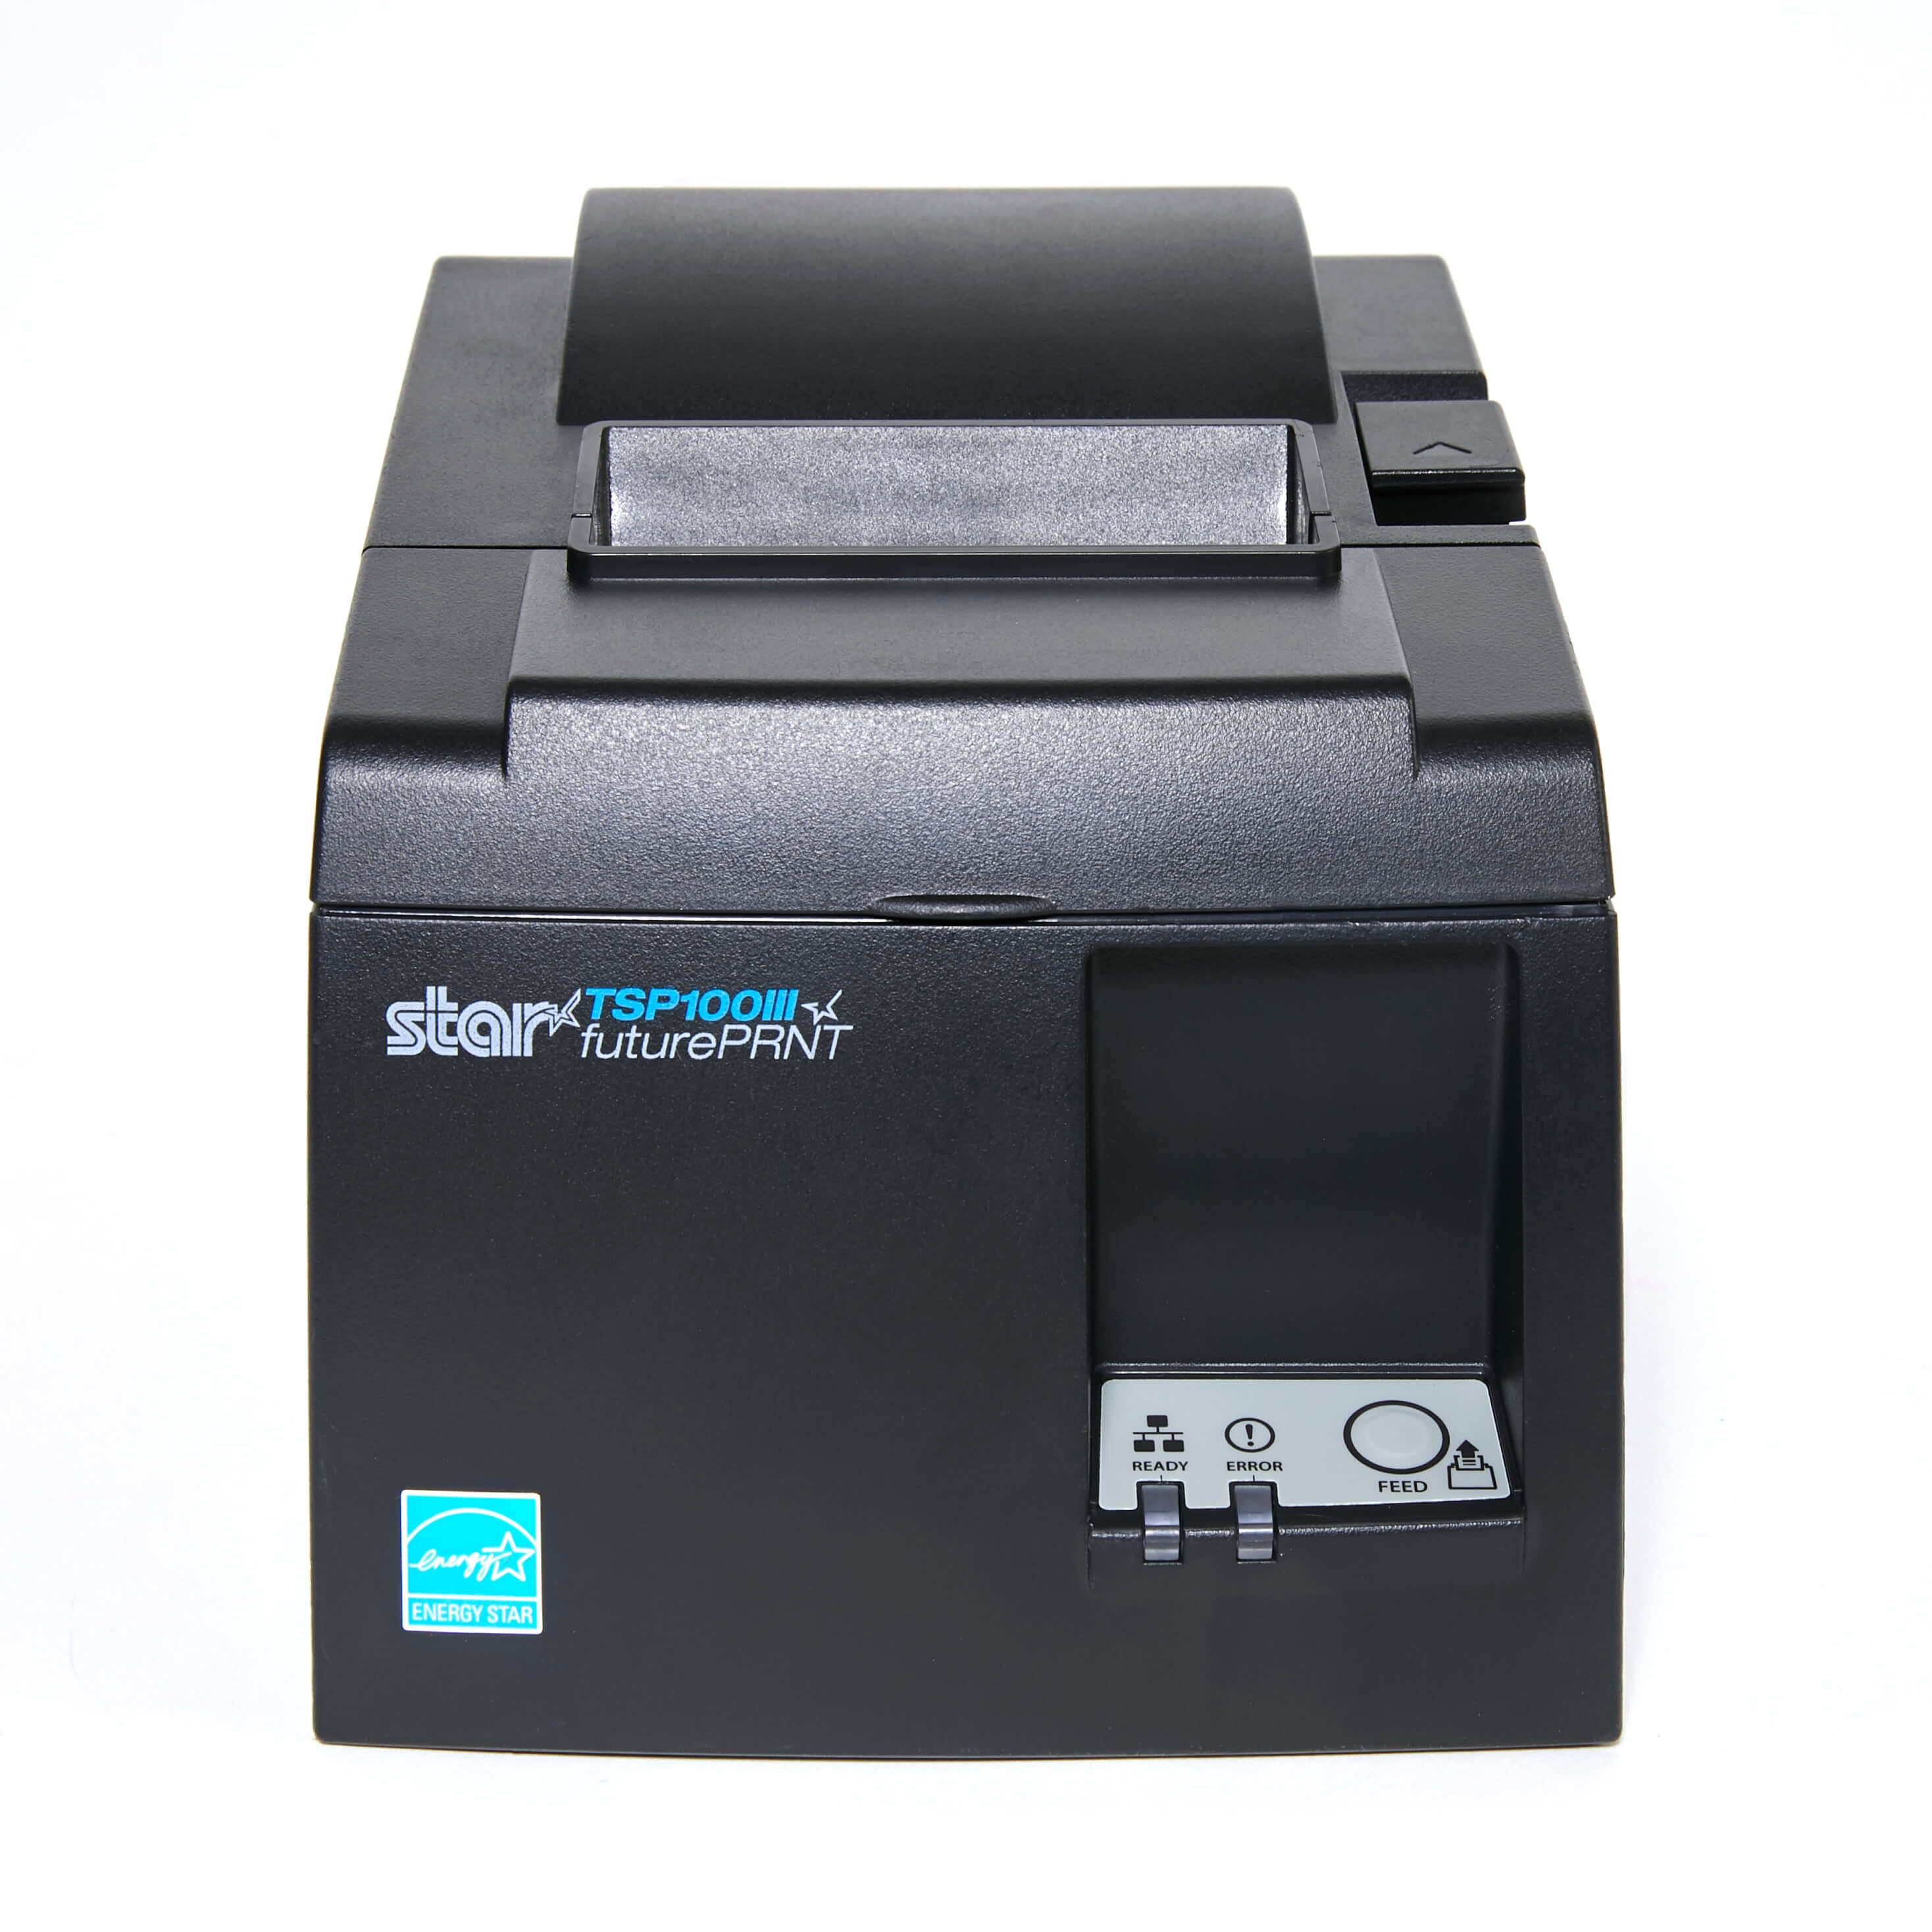 star tsp100-printer